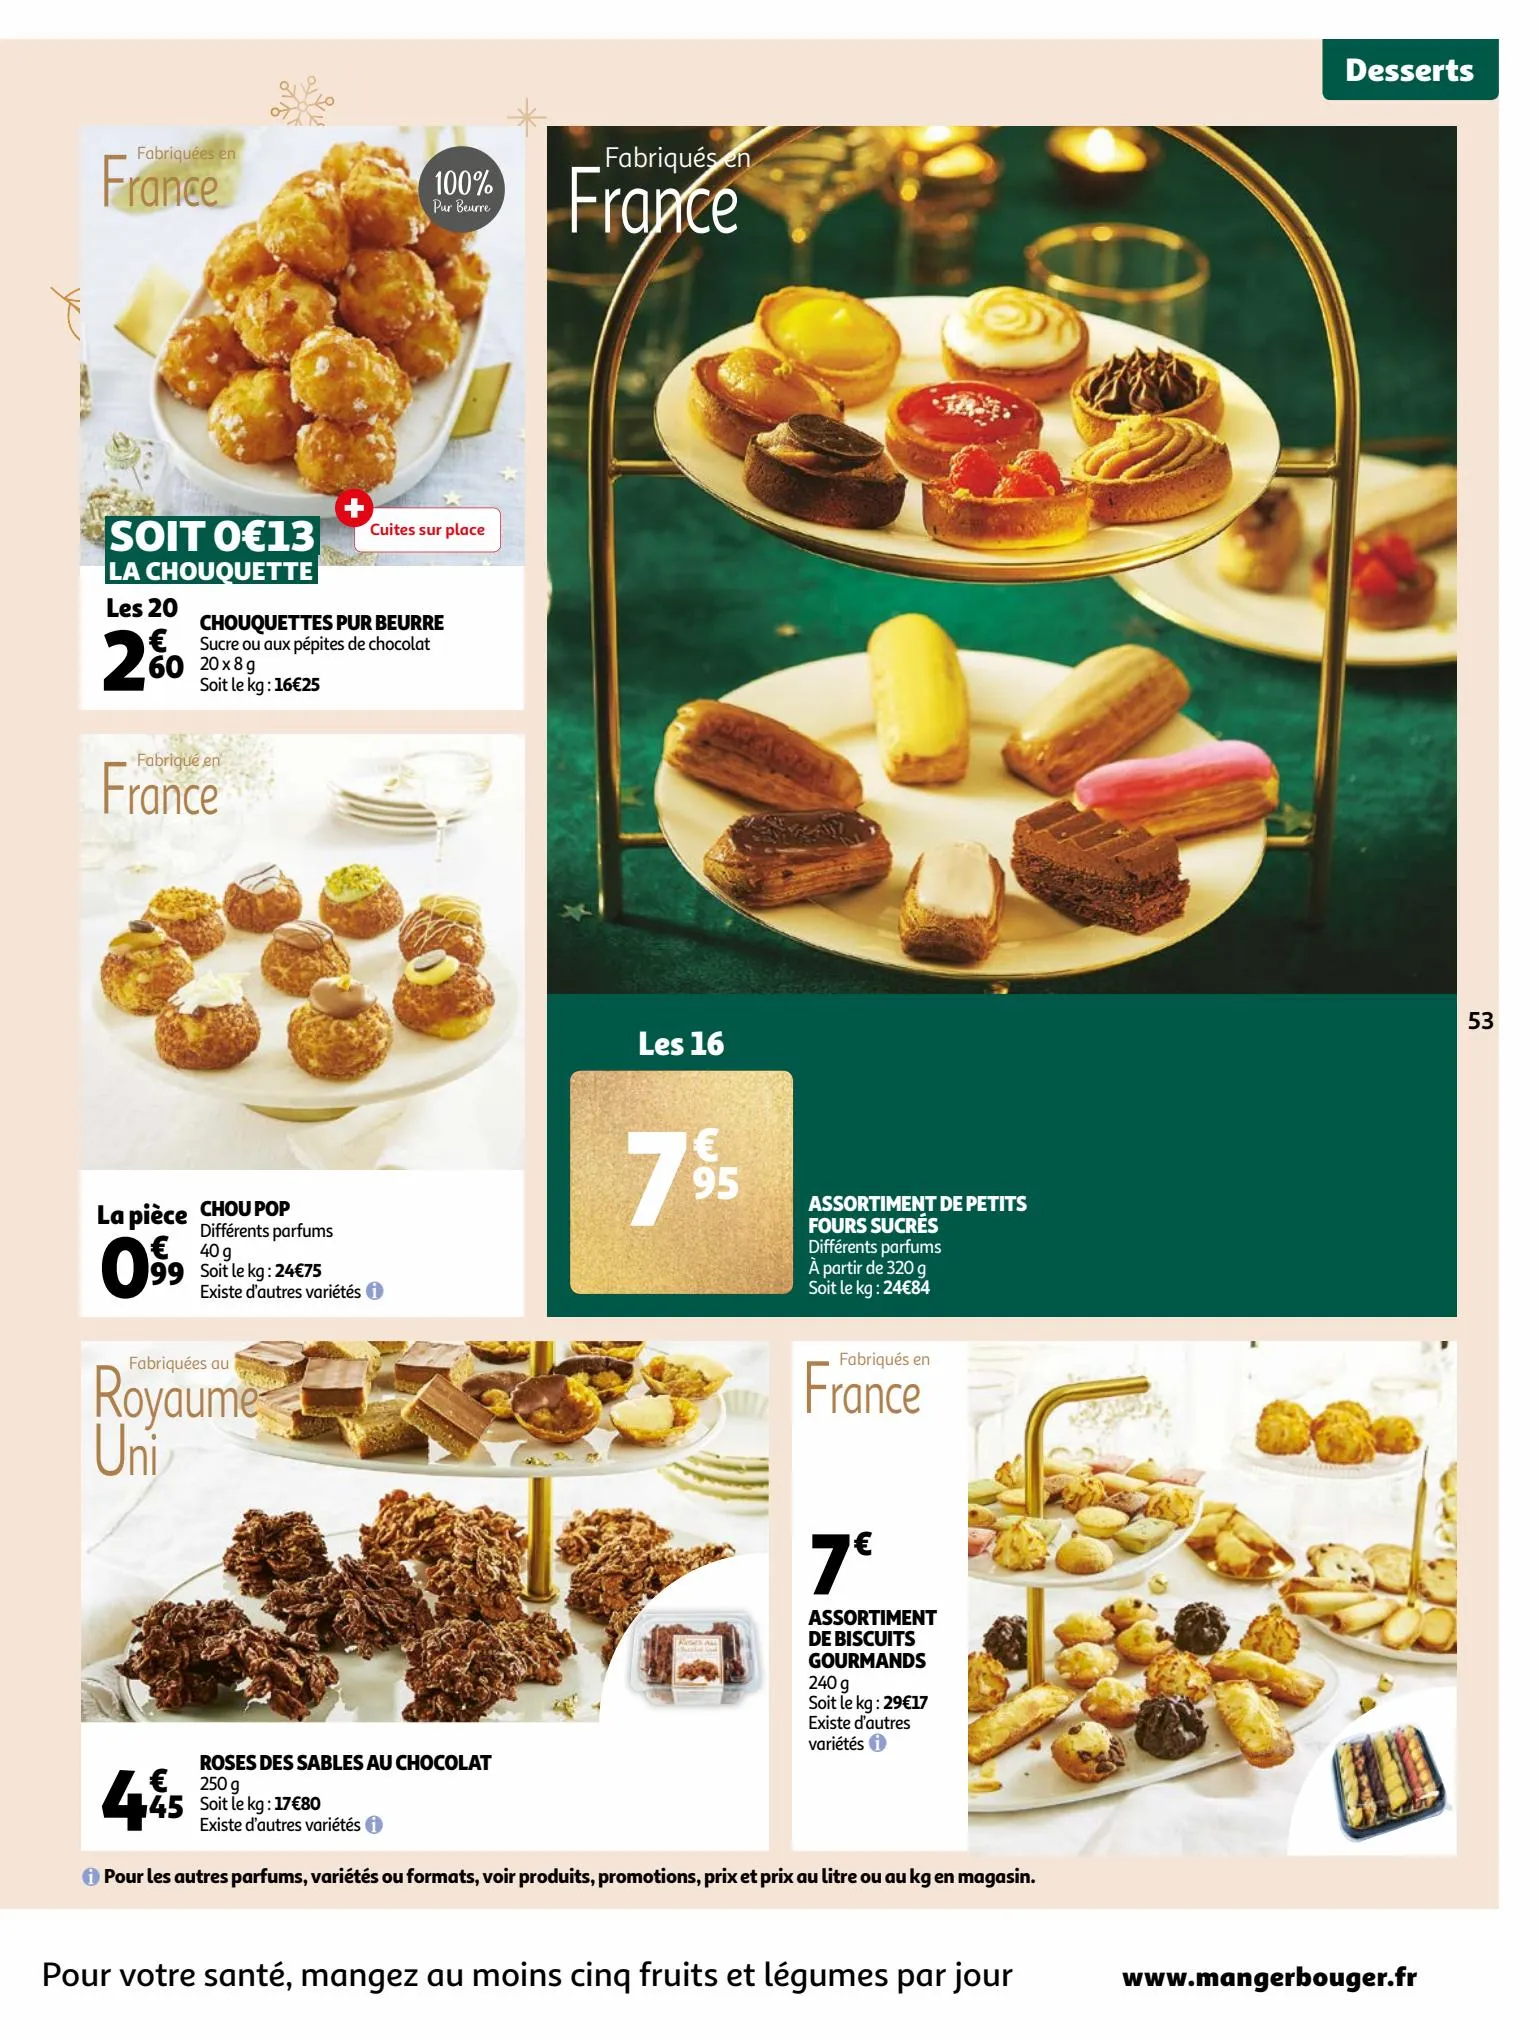 Catalogue Guide gastronomique, page 00053